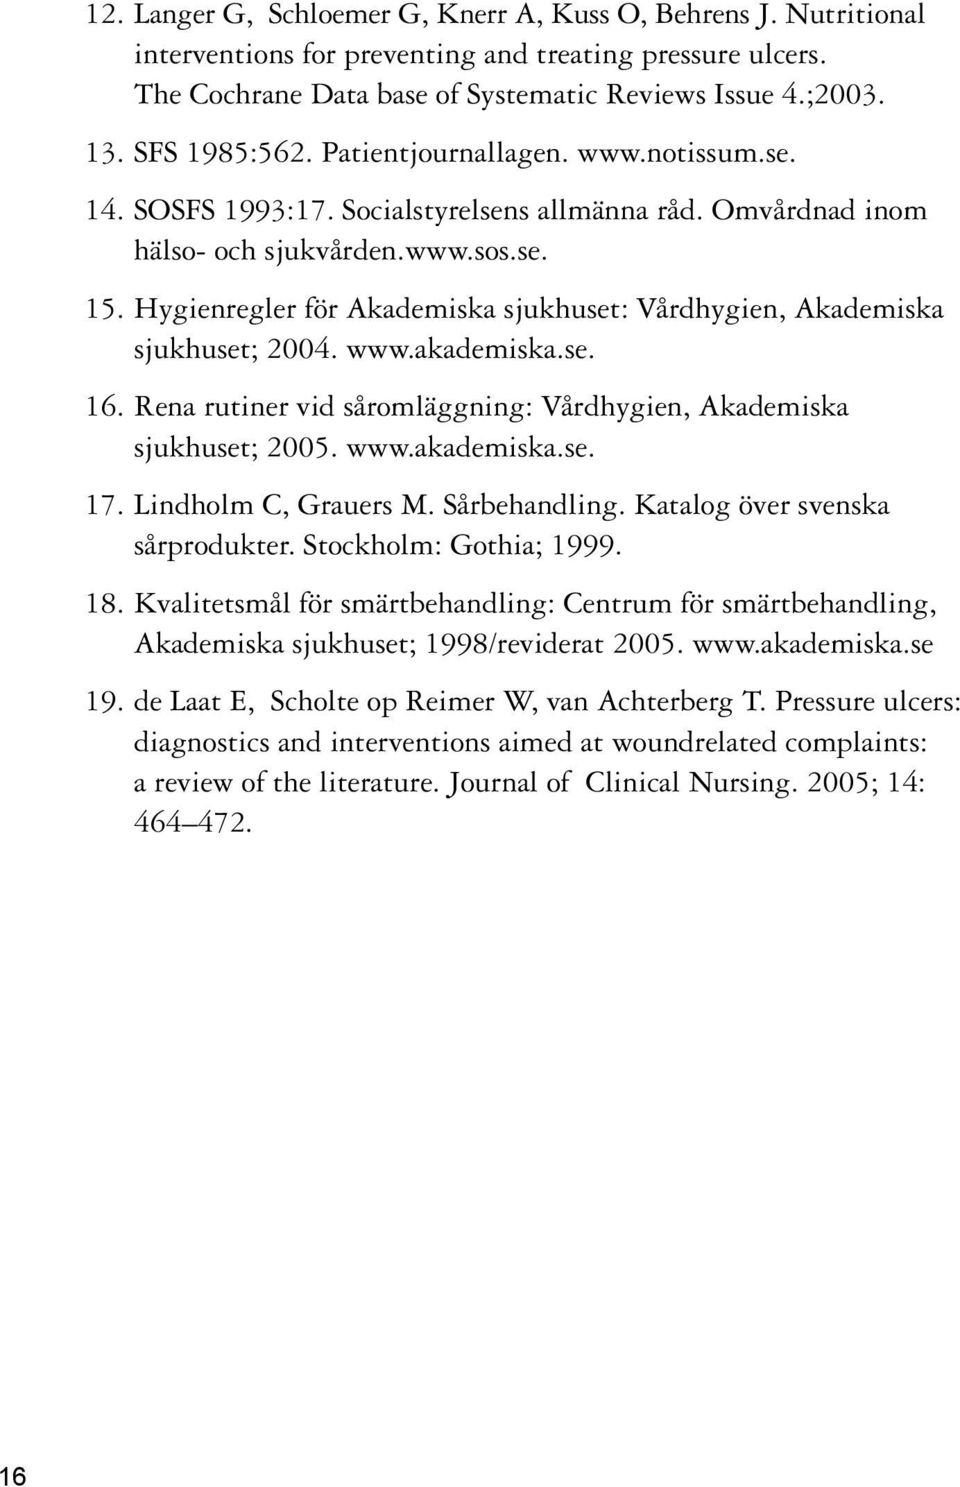 Hygienregler för Akademiska sjukhuset: Vårdhygien, Akademiska sjukhuset; 2004. www.akademiska.se. 16. Rena rutiner vid såromläggning: Vårdhygien, Akademiska sjukhuset; 2005. www.akademiska.se. 17.